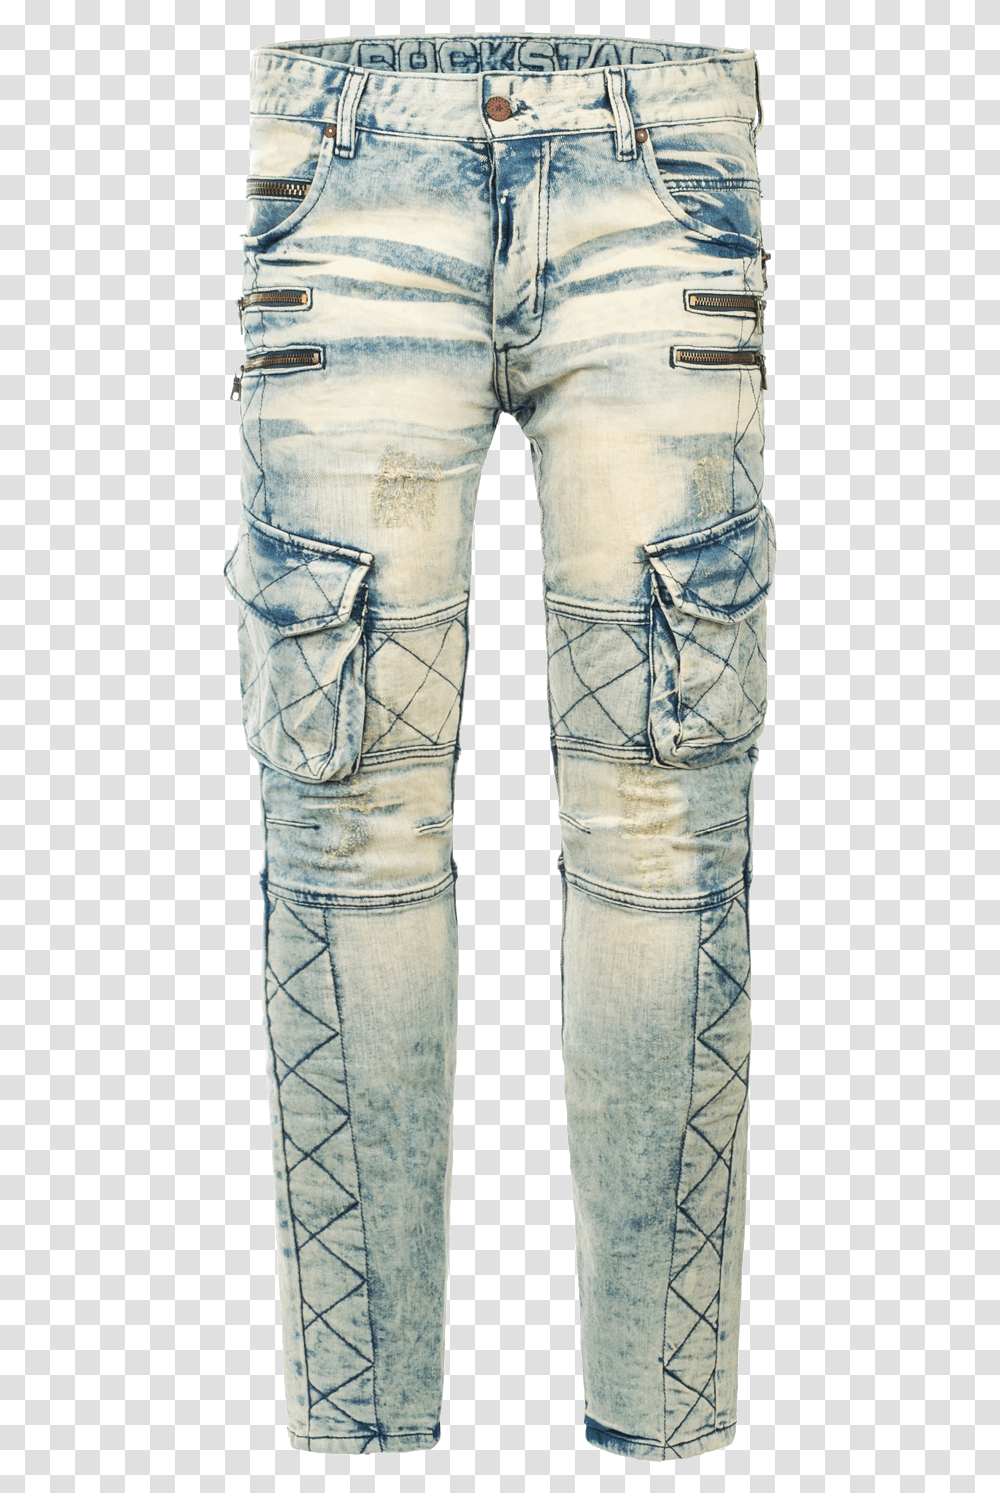 Biker Jeans Image With Pocket, Clothing, Pants, Skin, Footwear Transparent Png